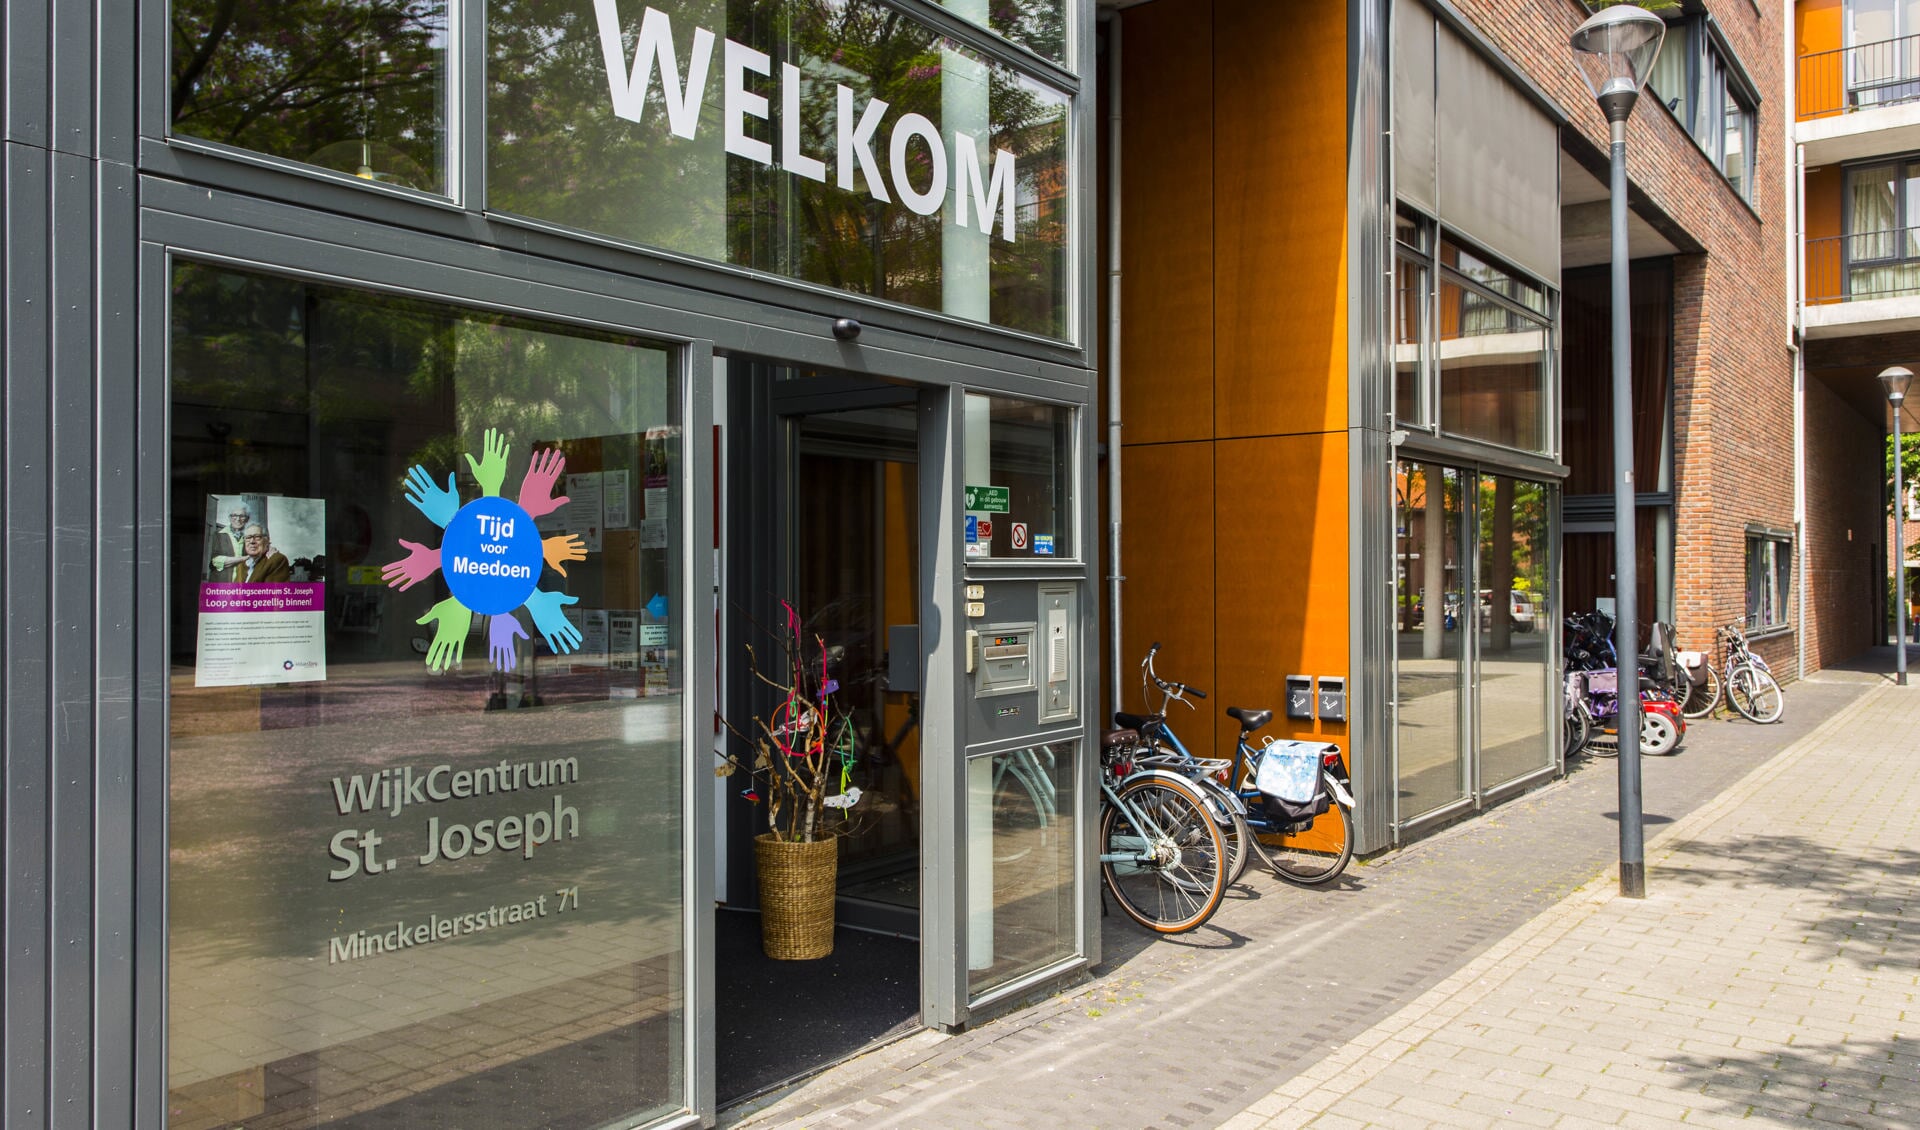 Wijkcentrum St. Joseph aan de Minckelersstraat is dinsdag 29 juni het decor van een open dag. 